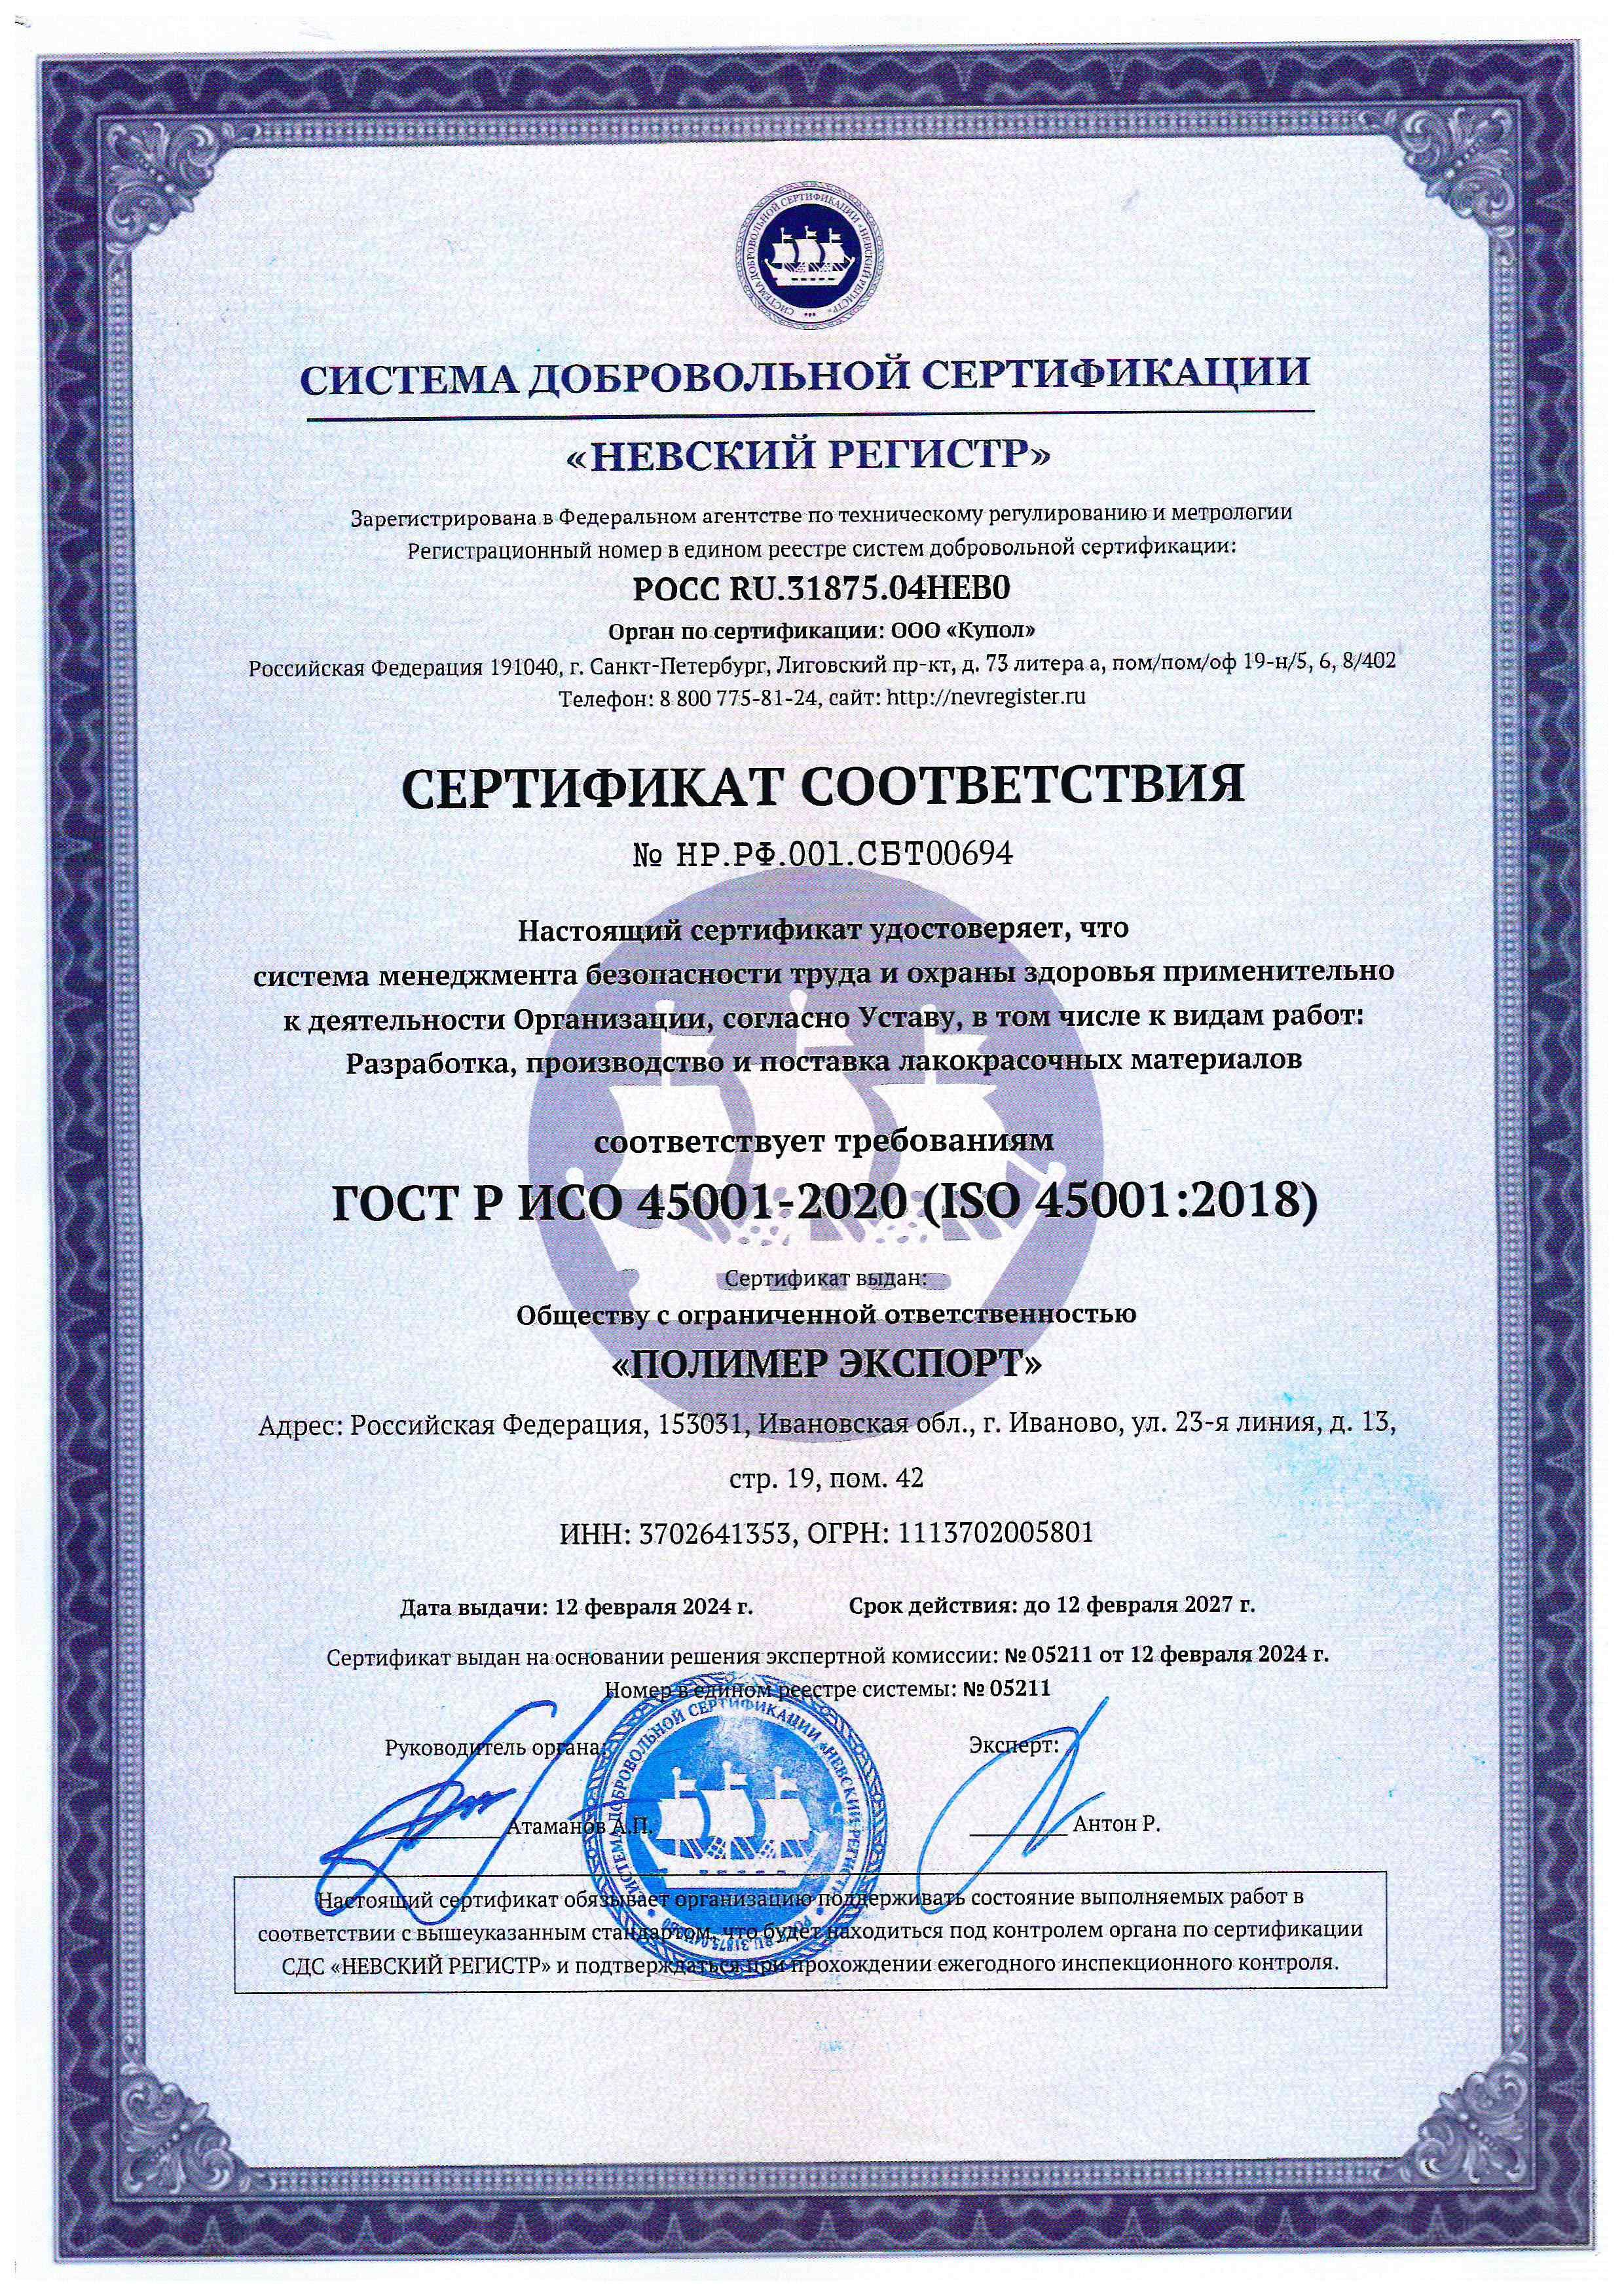 Сертификат соответствия ГОСТ Р ИСО 45001-2020.jpg